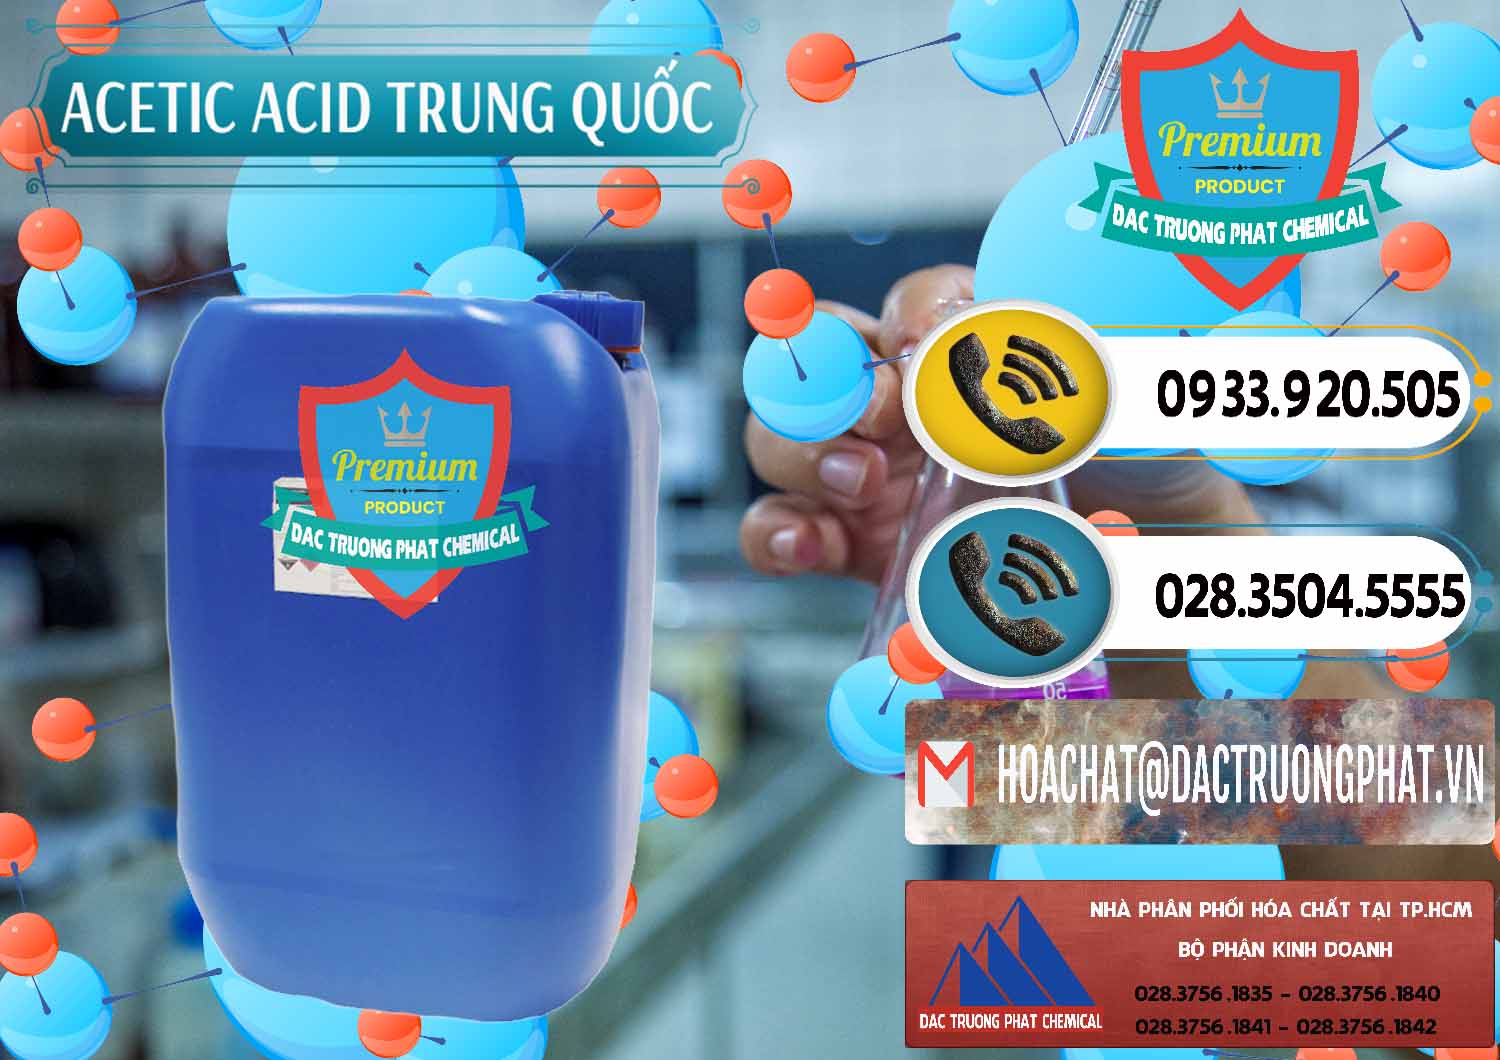 Nơi chuyên cung cấp & bán Acetic Acid – Axit Acetic Trung Quốc China - 0358 - Công ty bán - phân phối hóa chất tại TP.HCM - hoachatdetnhuom.vn